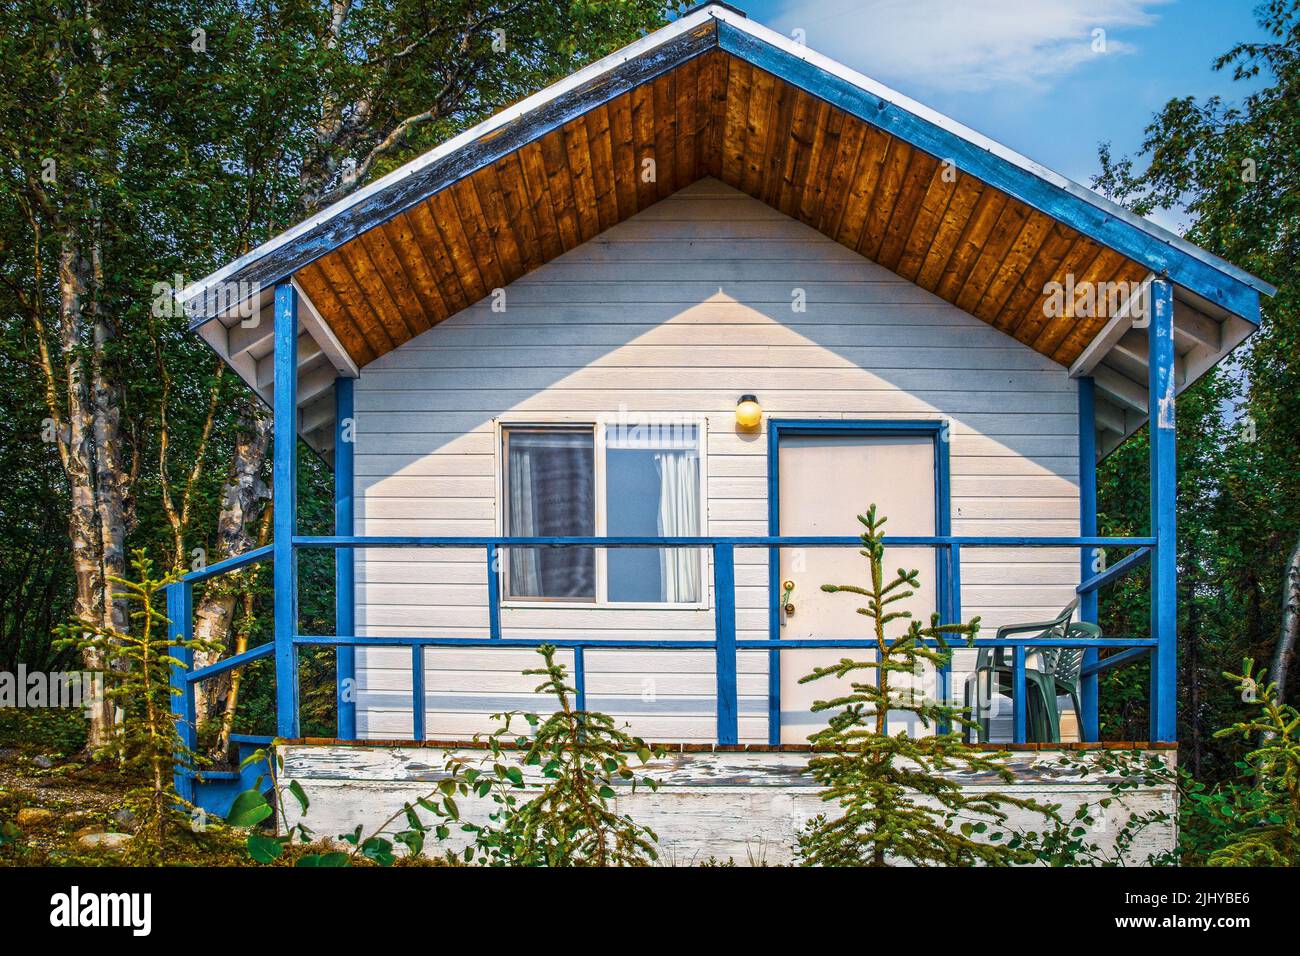 Petite maison dans les bois de l'Alaska - porche avec rails et parement blanc trimed en bleu clair Banque D'Images